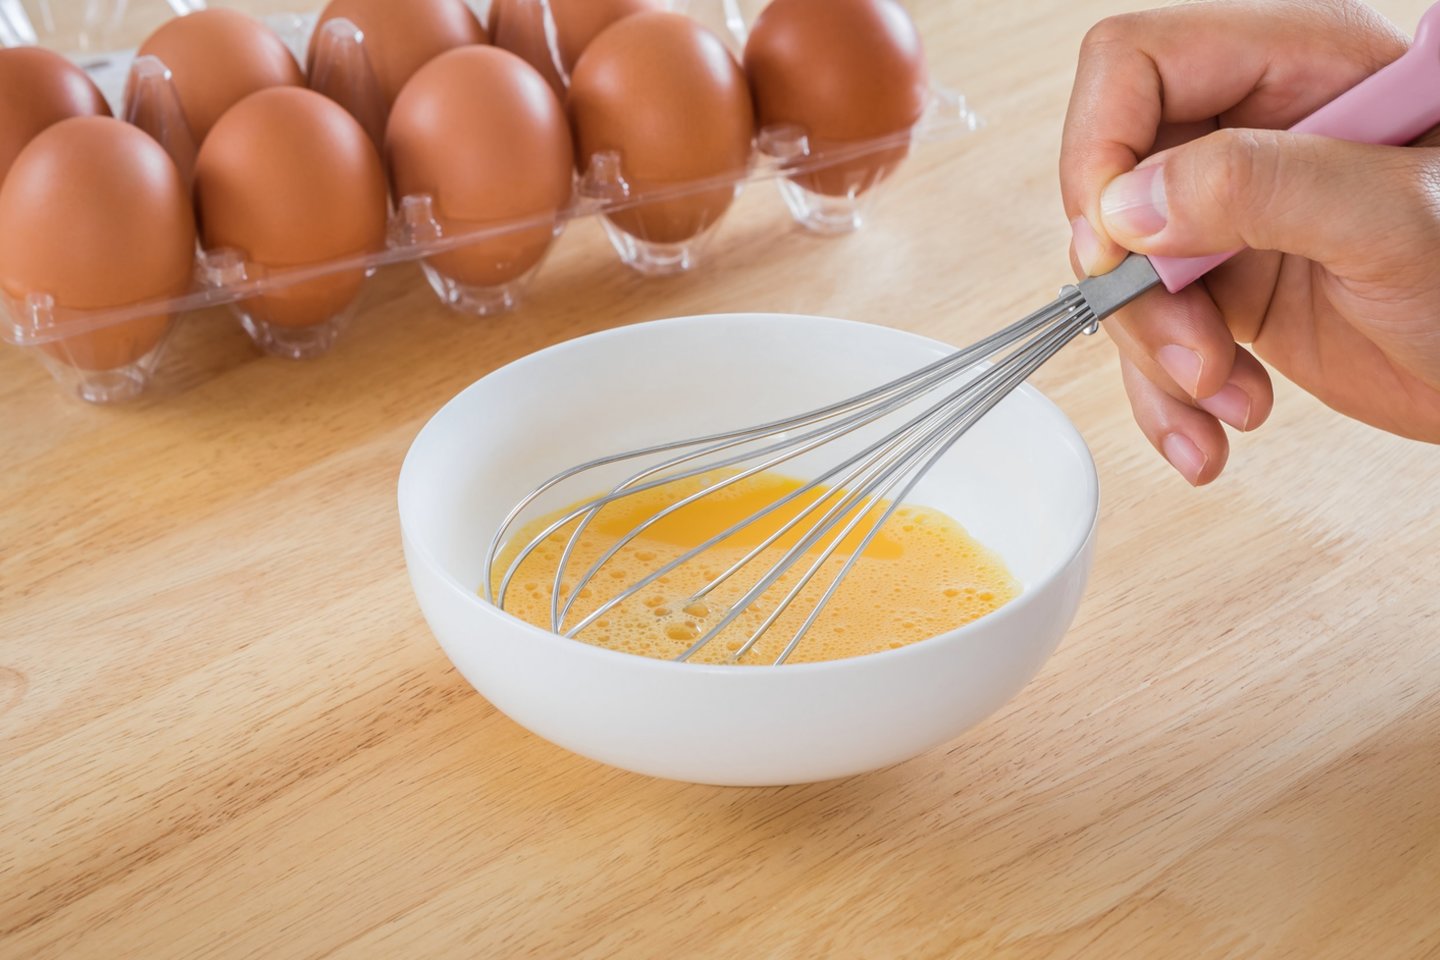 Pagaminti plaktą kiaušinienę ar išsikepti kiaušinį nesunku, bet tam tikros klaidos gali visa tai sugadinti. <br>123rf nuotr.